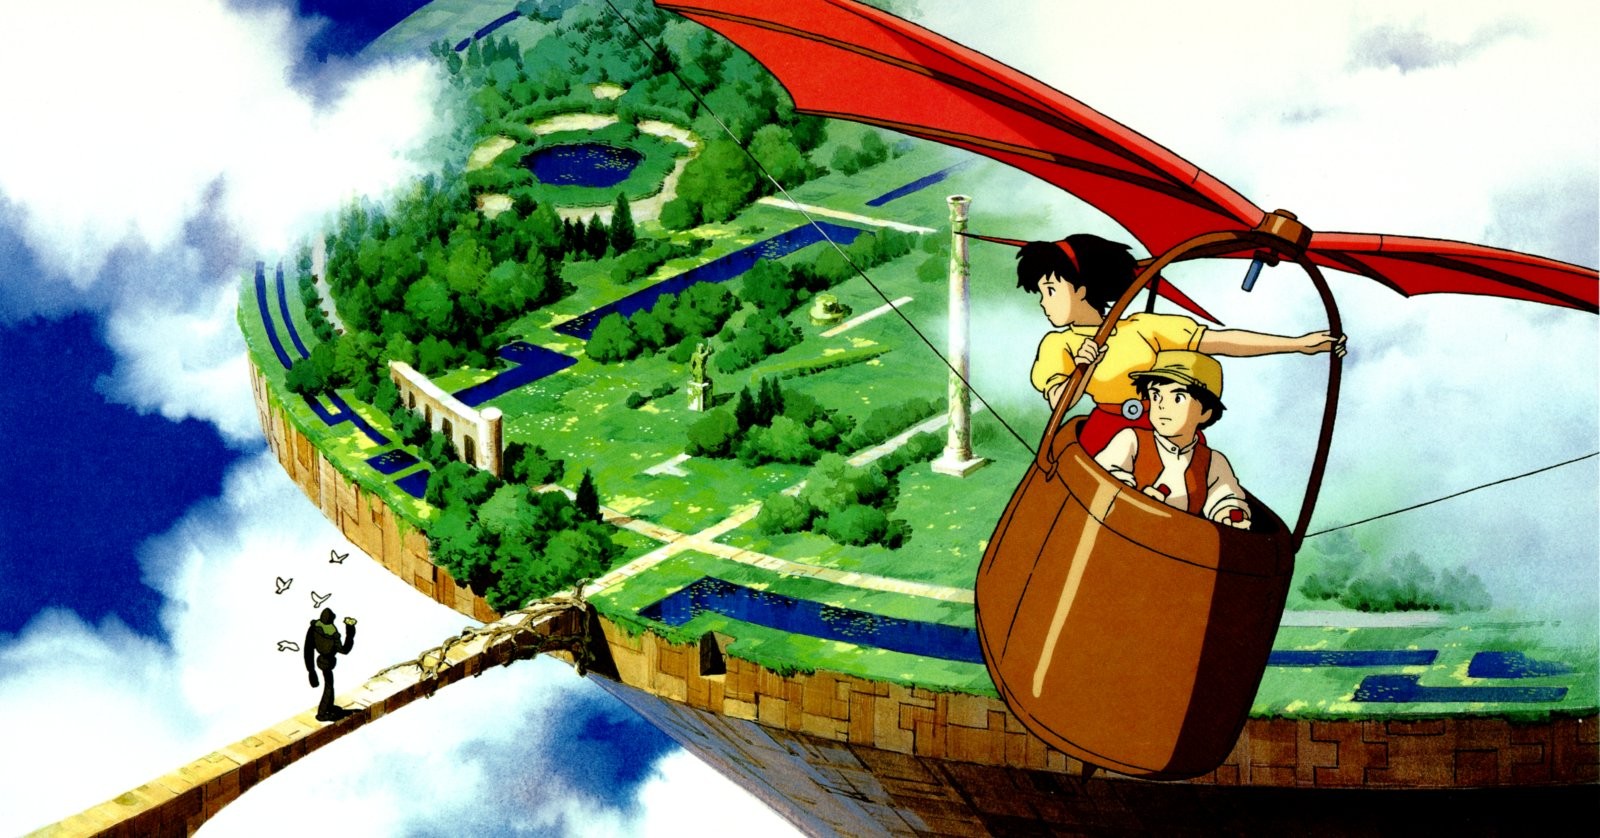 Castle in the Sky - Hayao Miyazaki